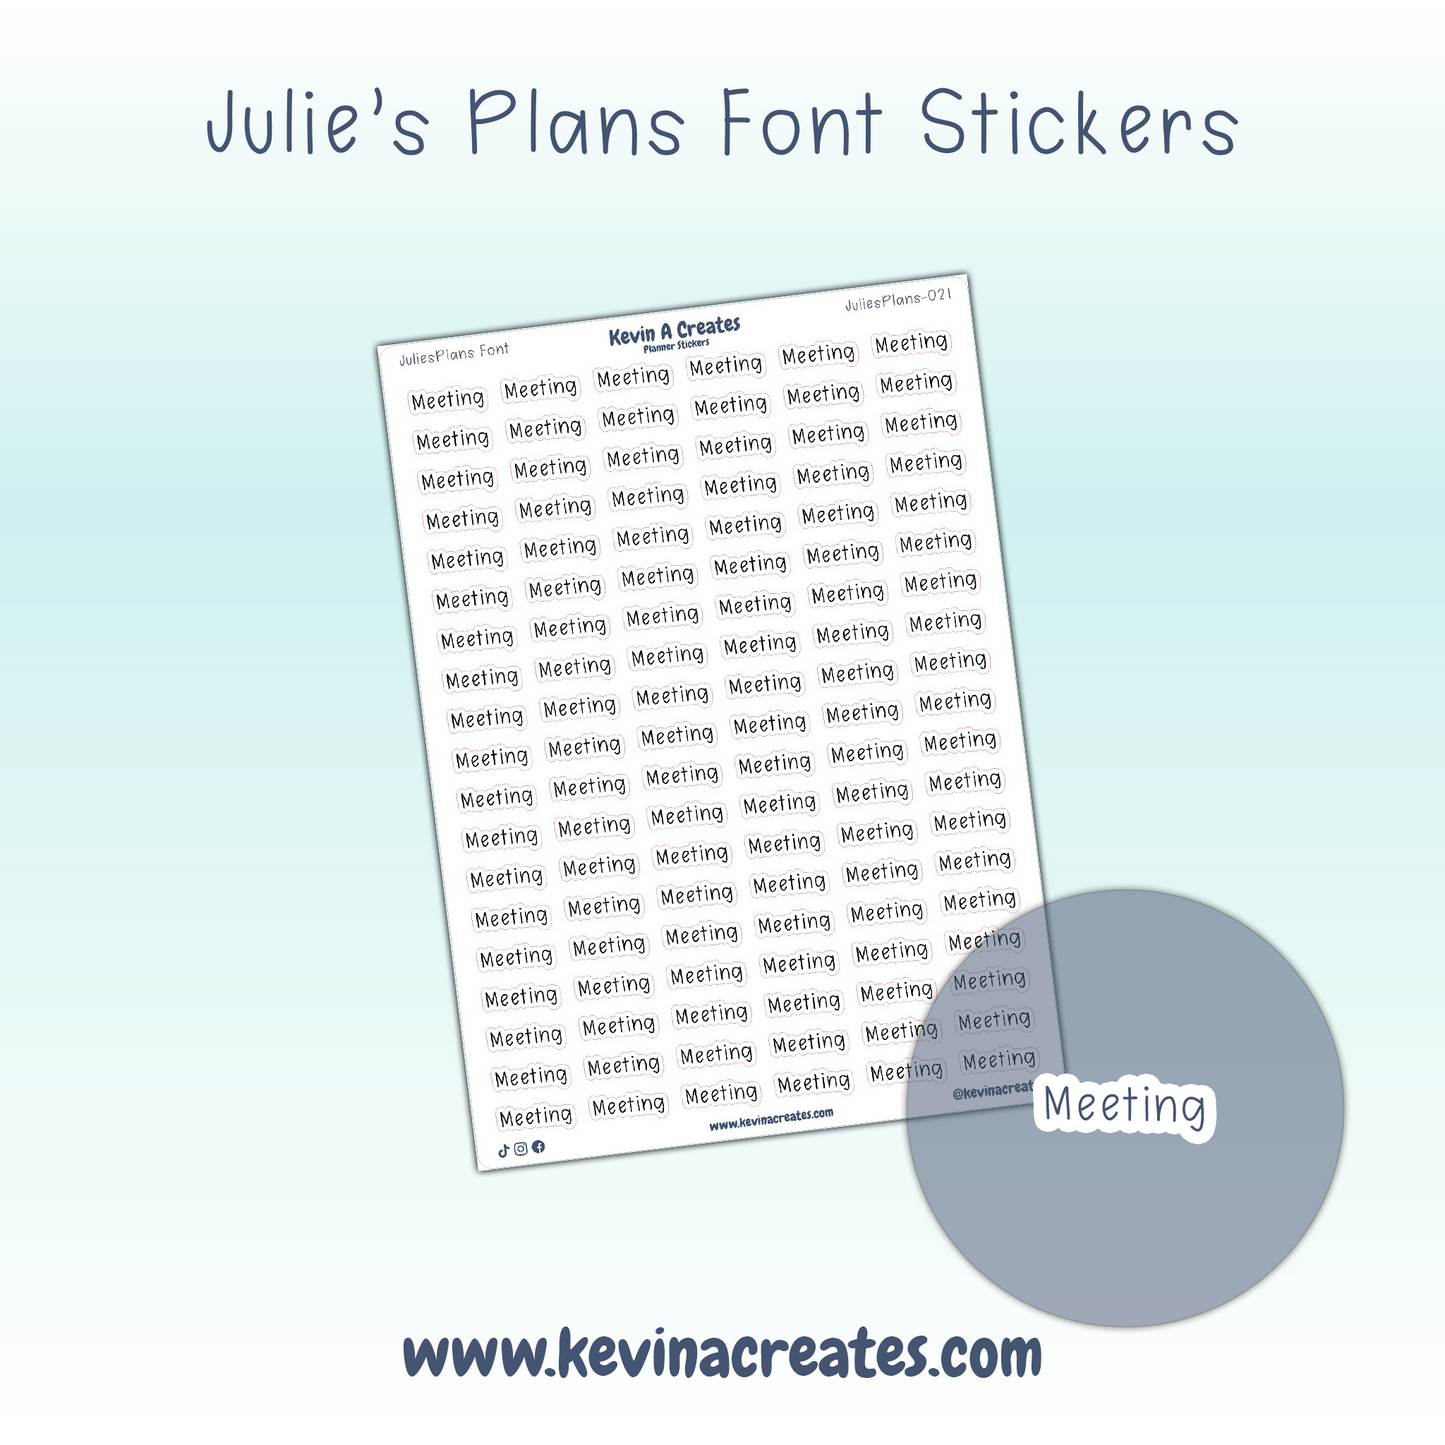 JuliesPlans-021, MEETING, JuliesPlans Font, Script Planner Stickers